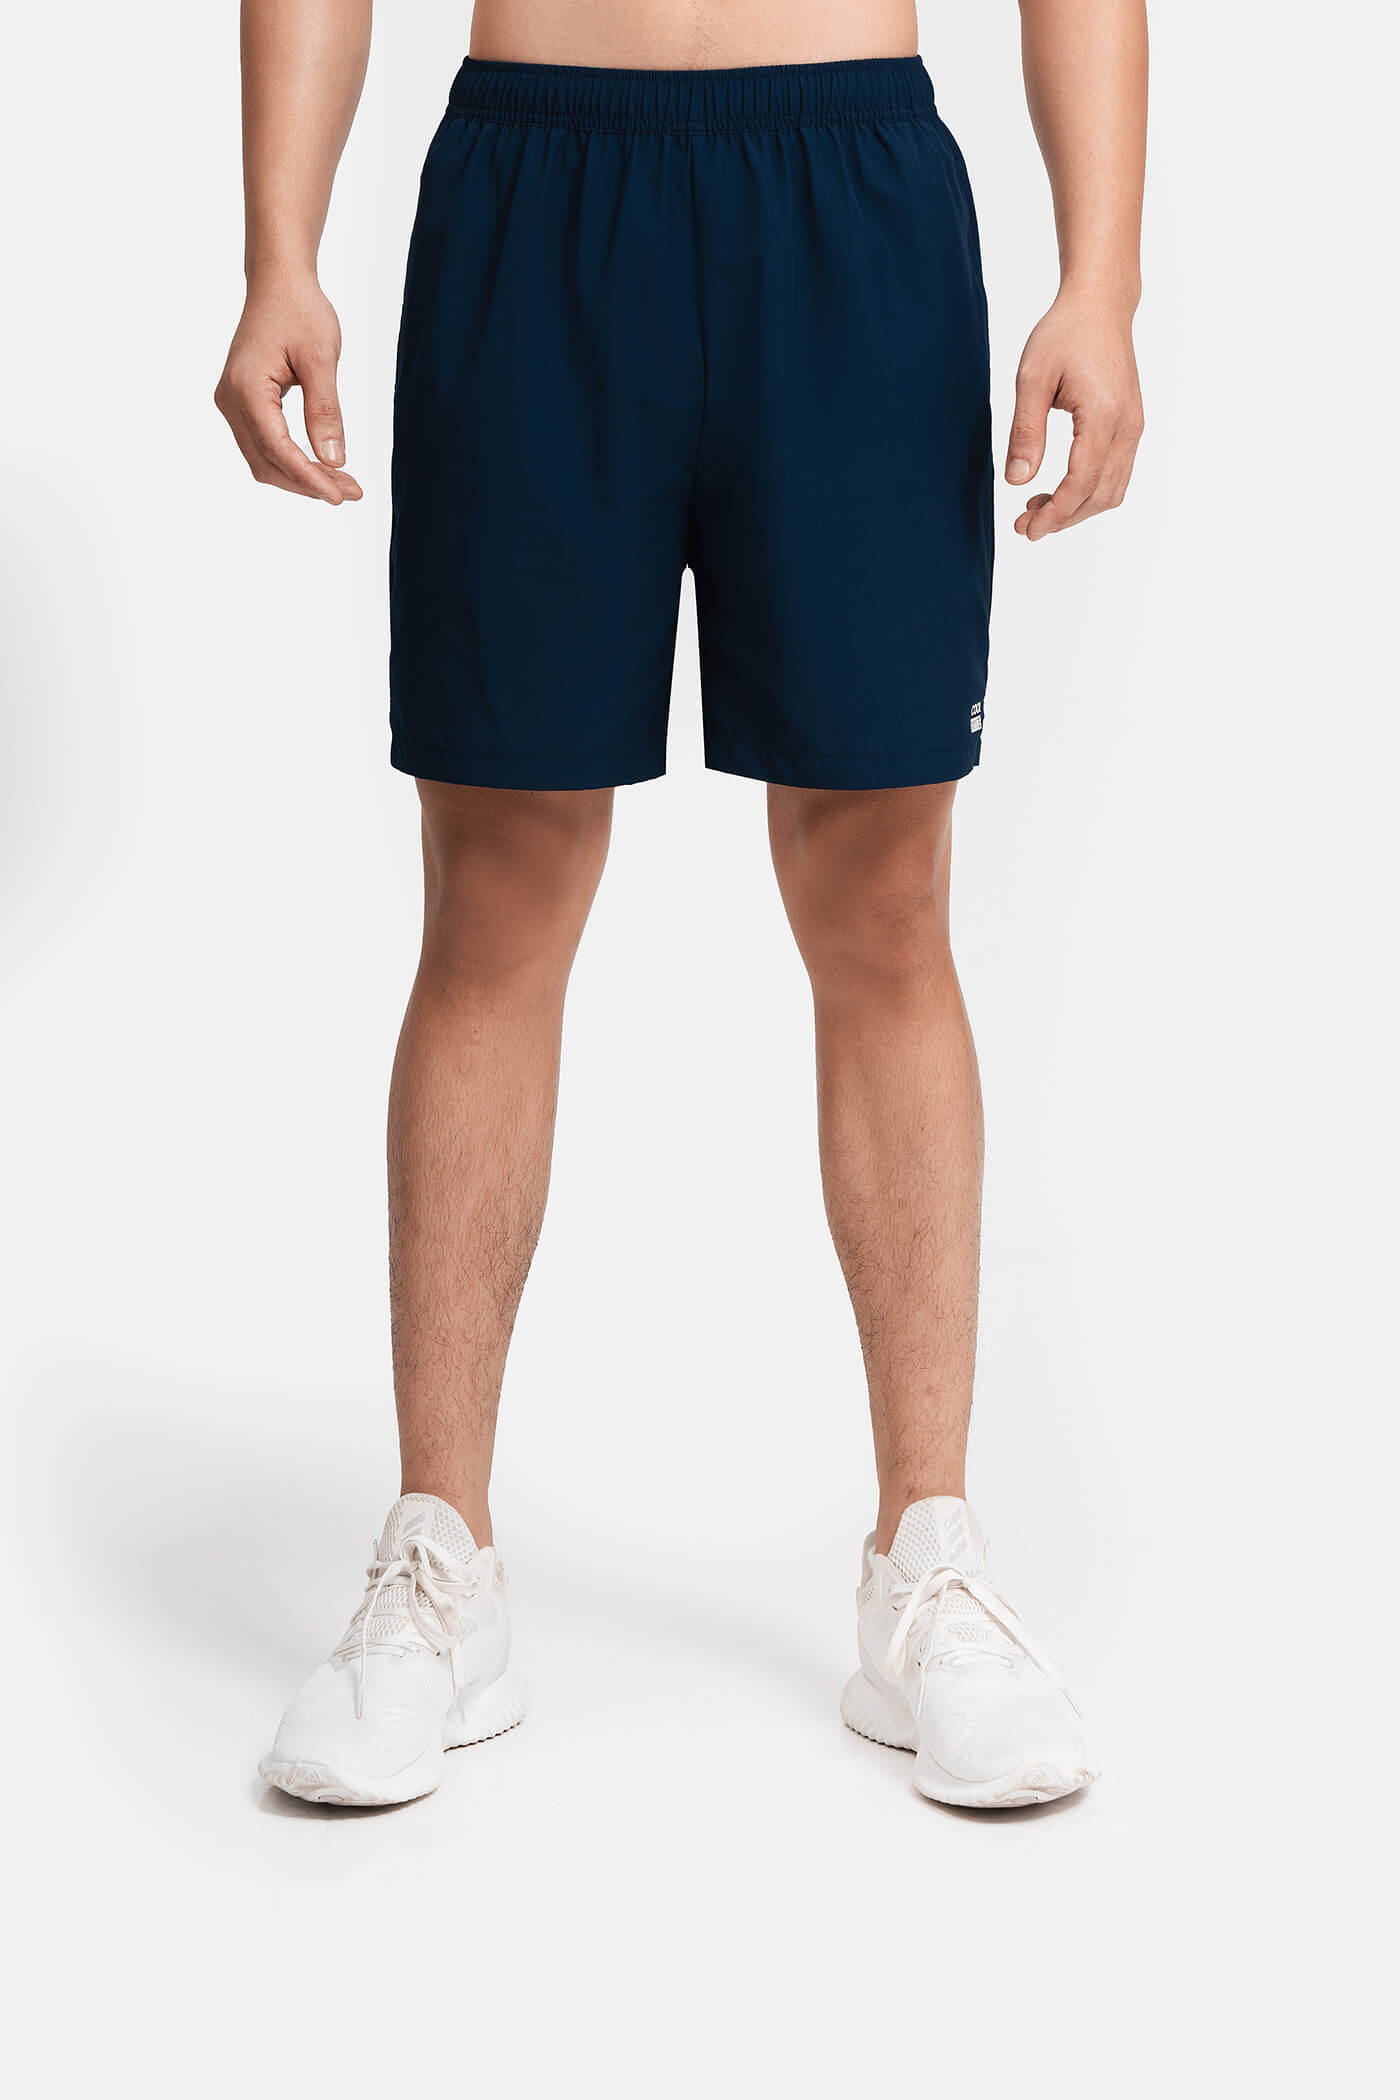 Quần shorts nam thể thao Recycle 7" V2 (túi sau có khóa kéo) Xanh navy